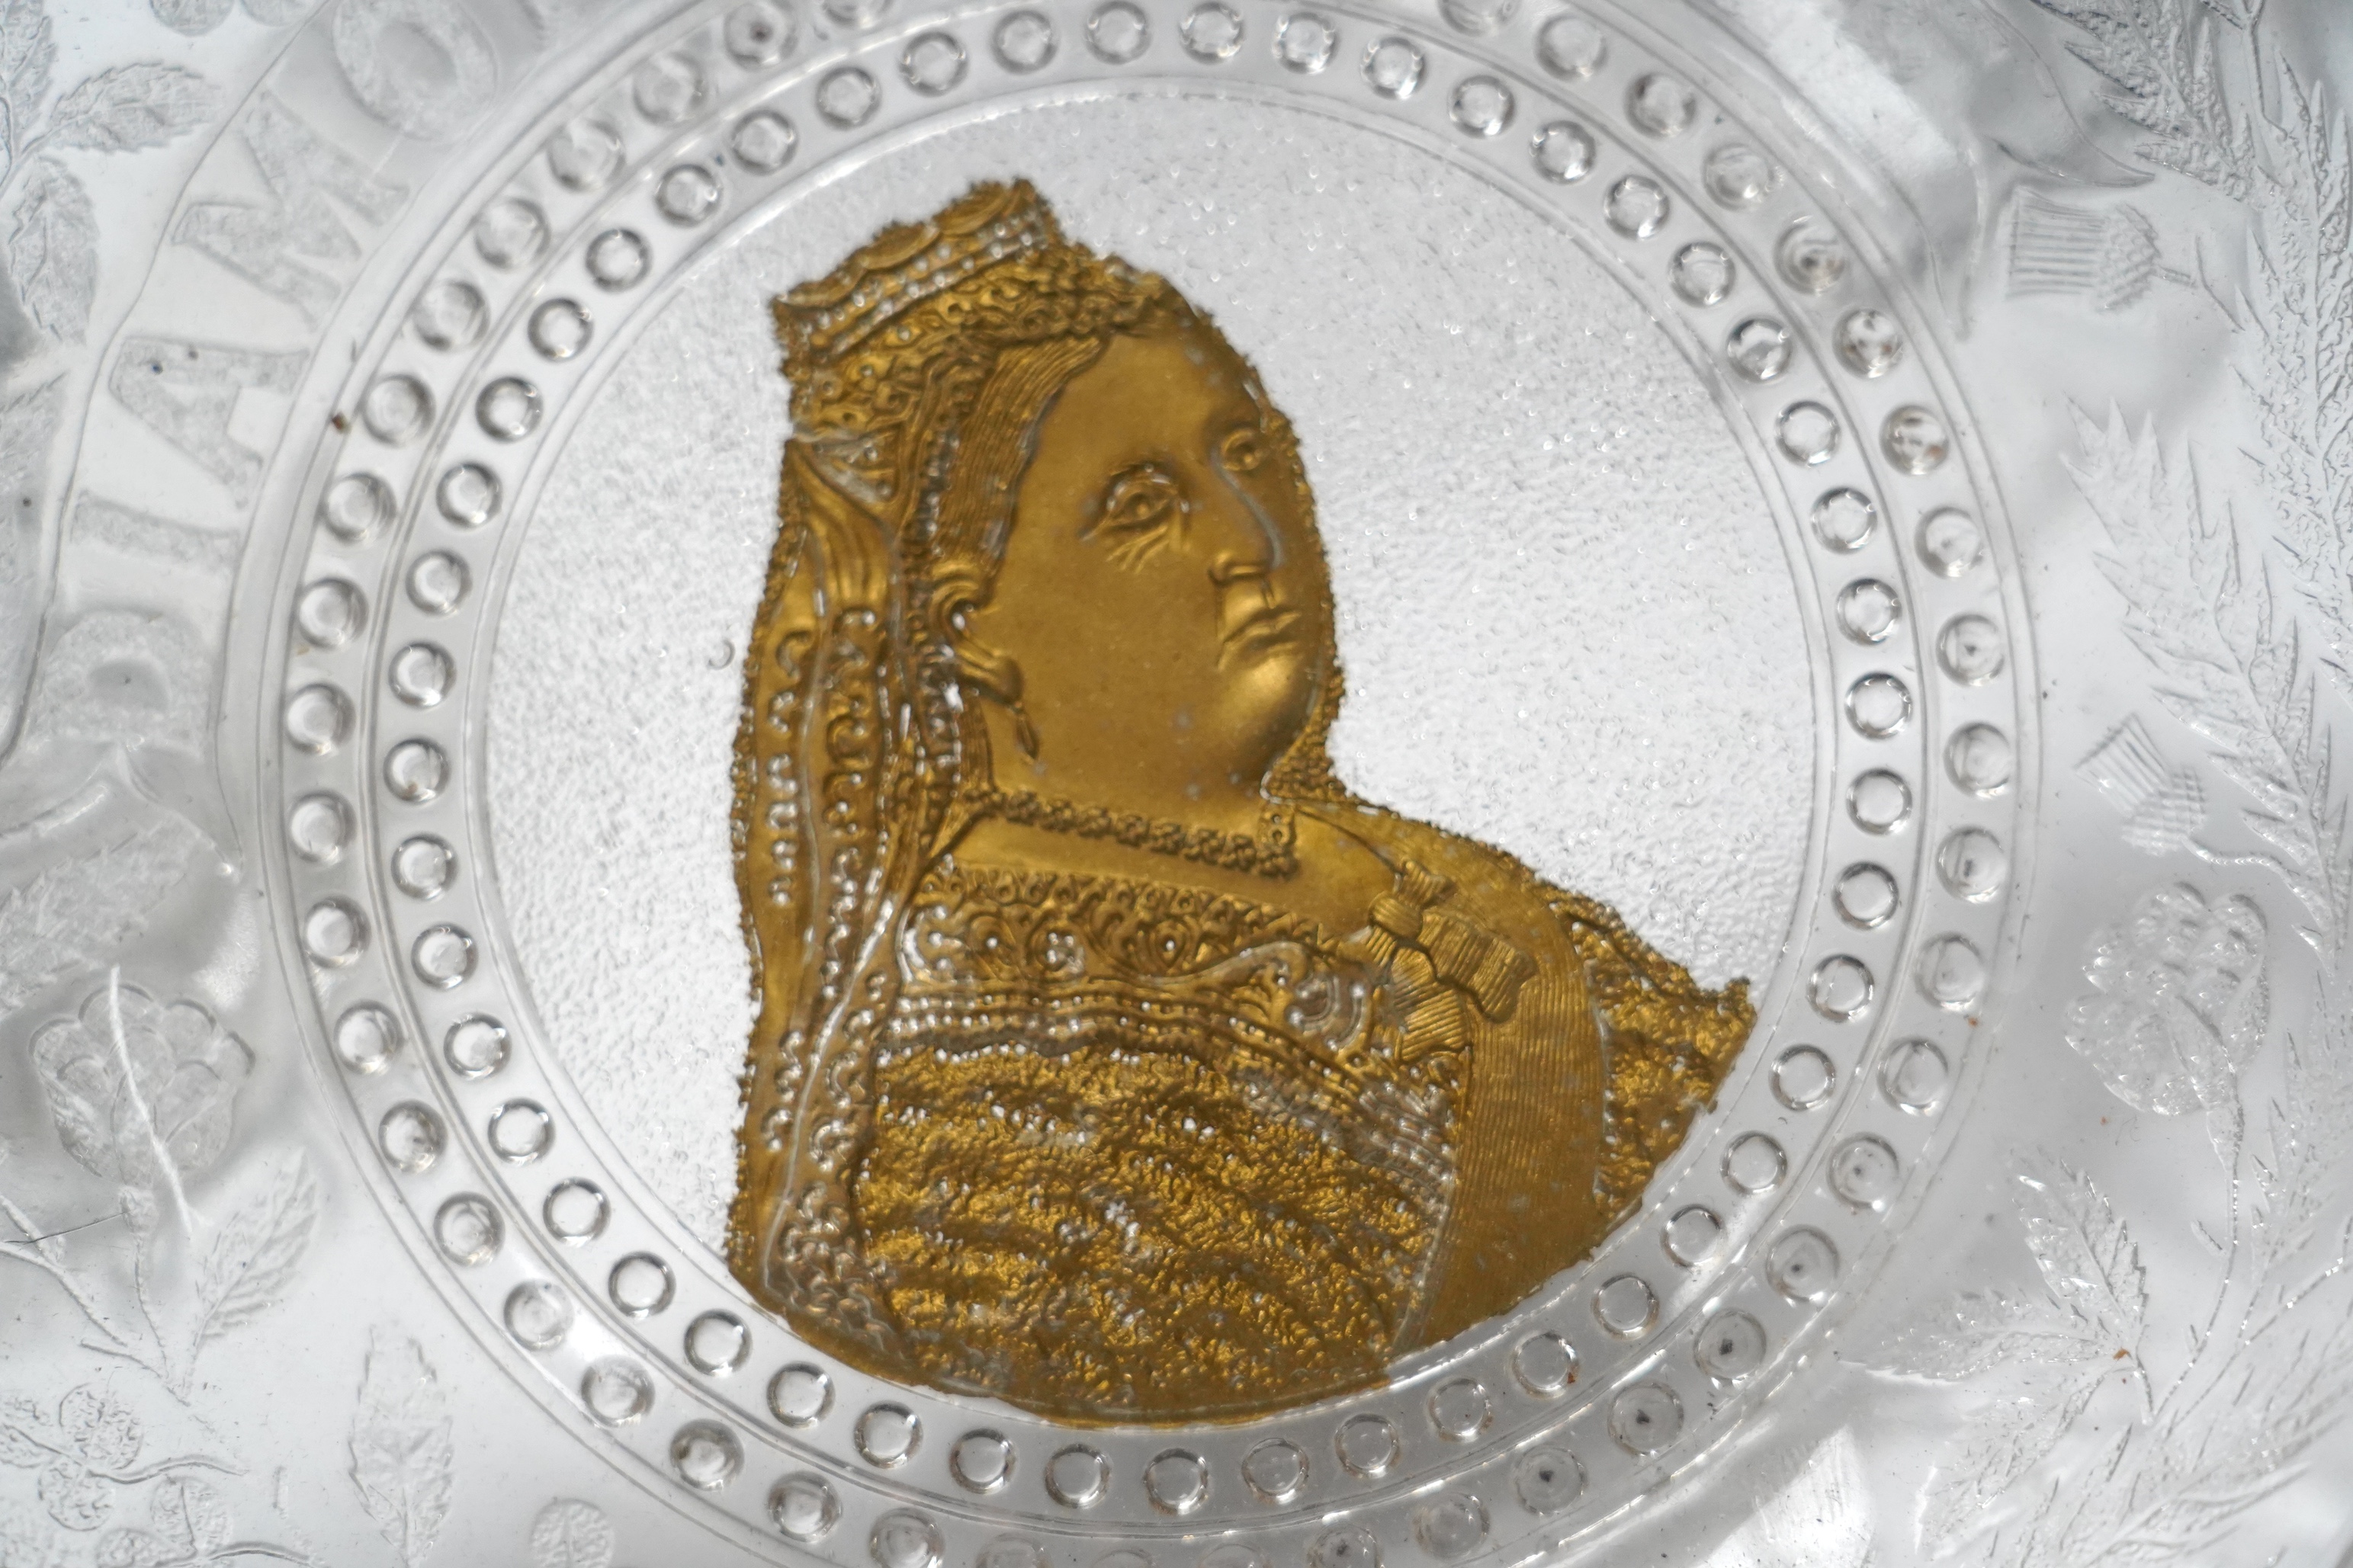 Seven press moulded glass commemorative items celebrating Queen Victoria's Diamond Jubilee. Condition - fair